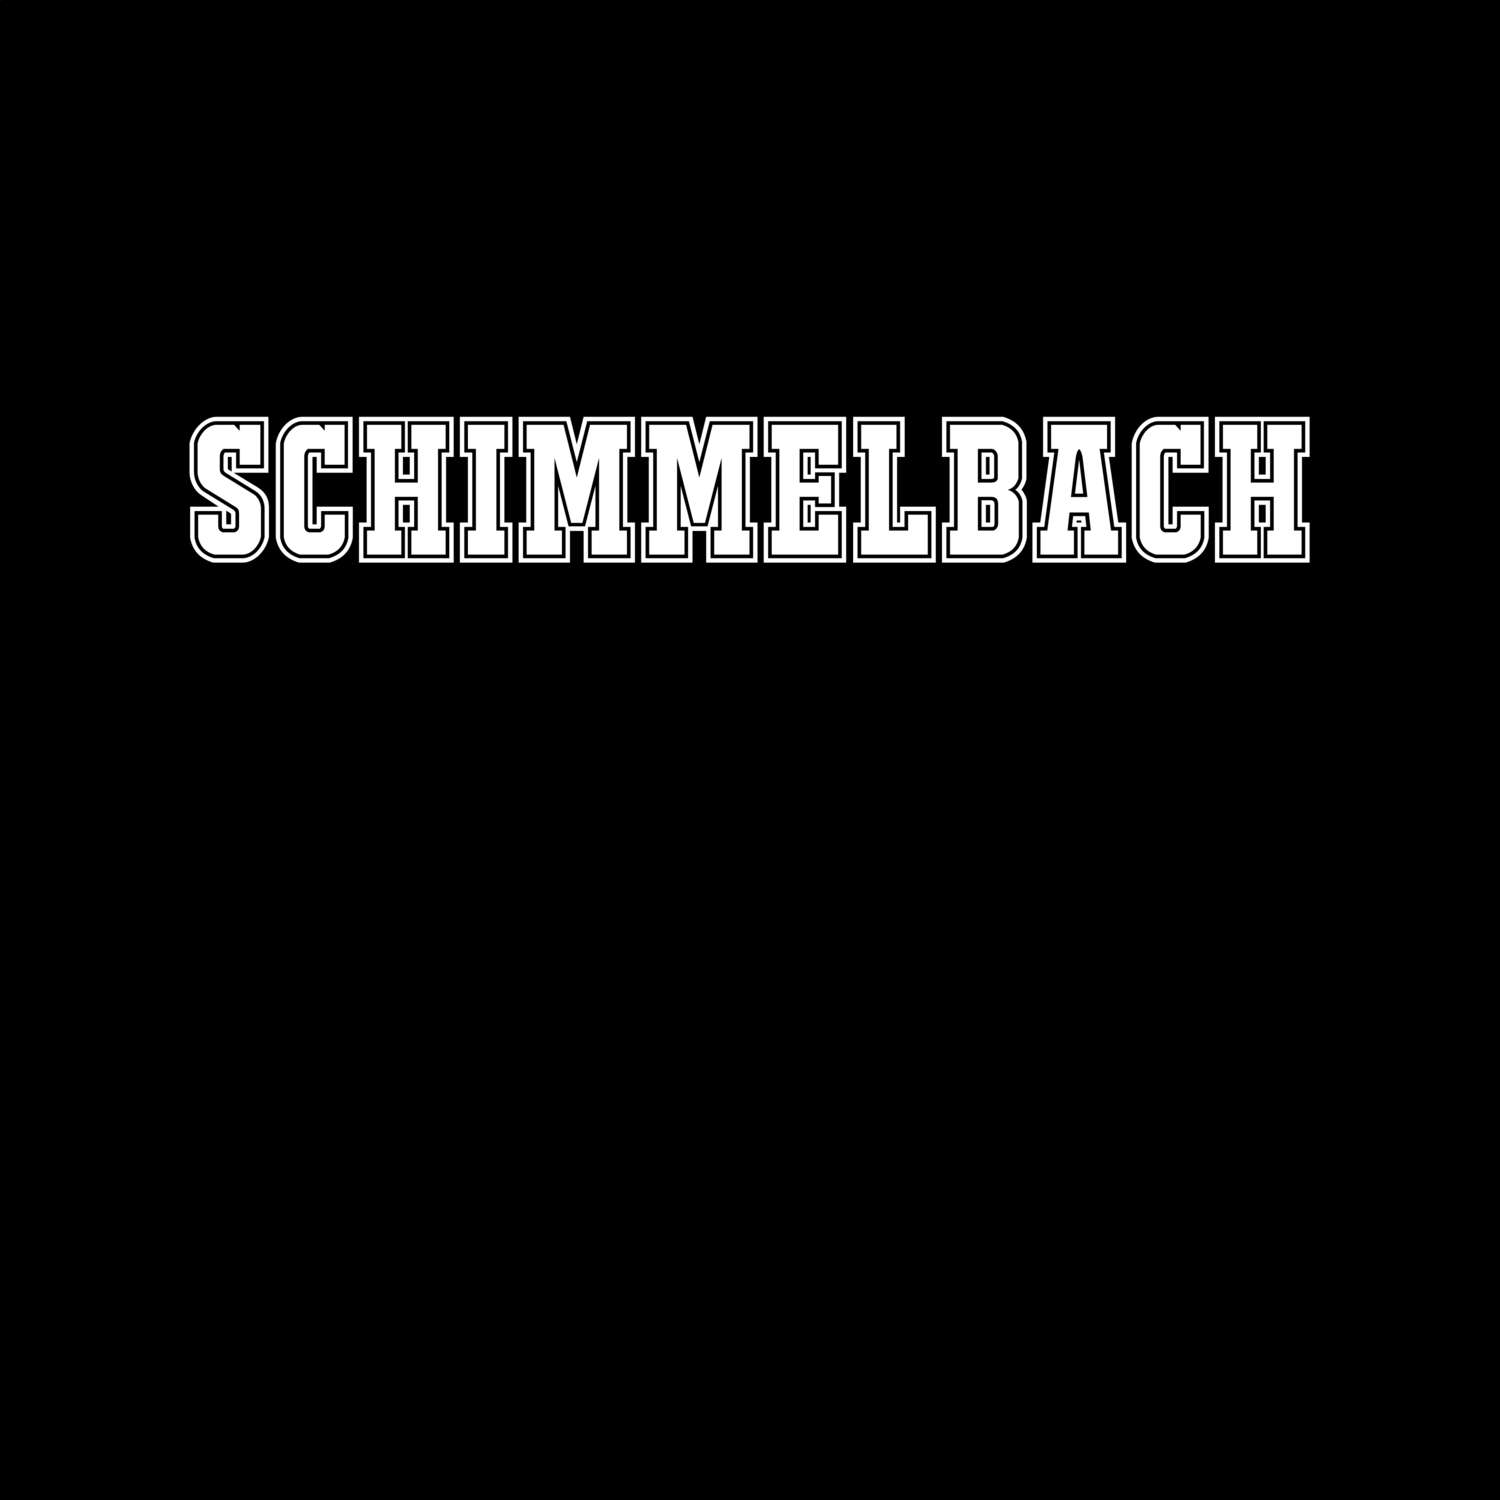 Schimmelbach T-Shirt »Classic«